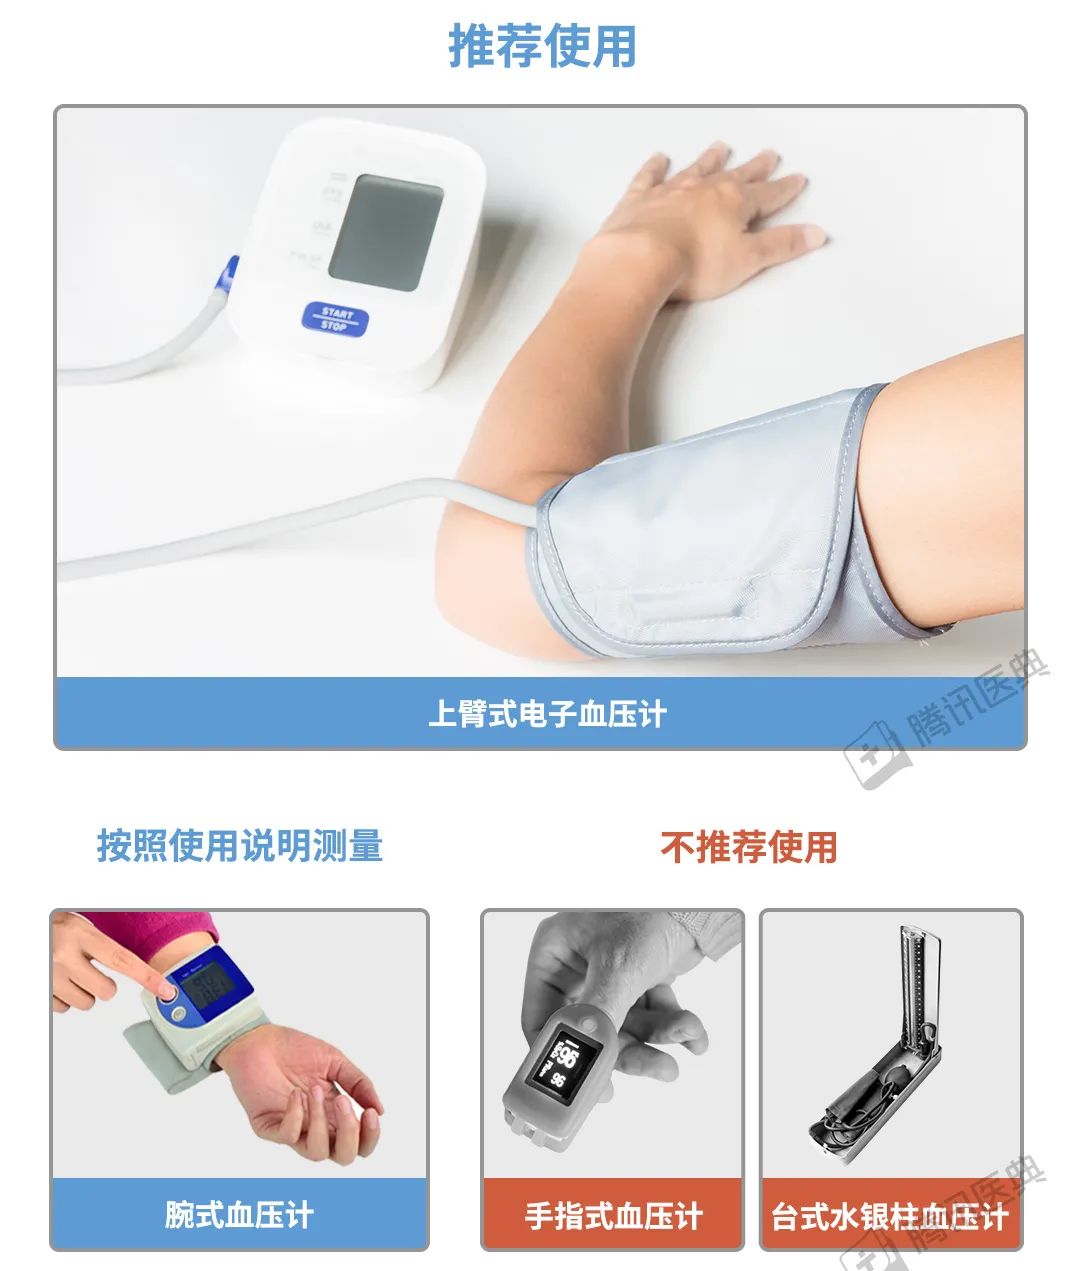 深圳市乐中行科技有限公司-手臂式电子血压计